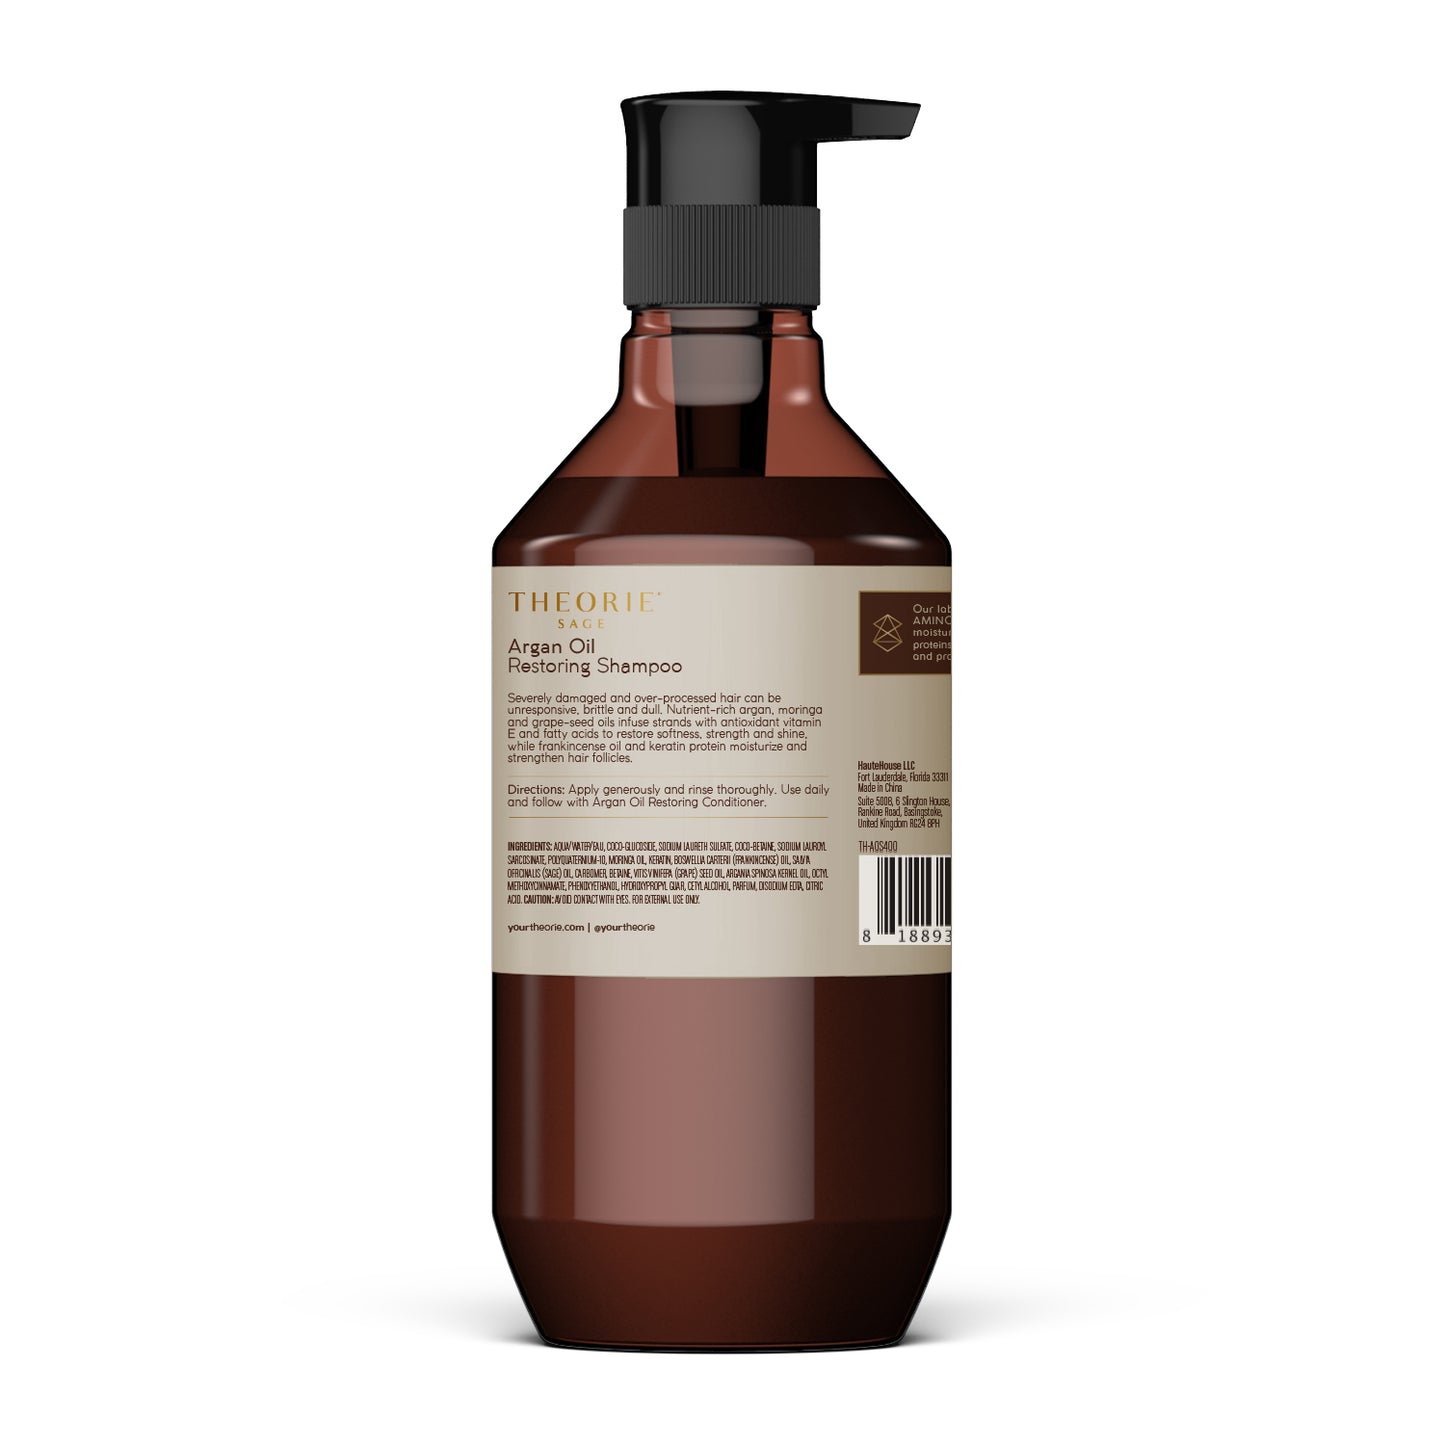 Argan Oil Restoring Shampoo